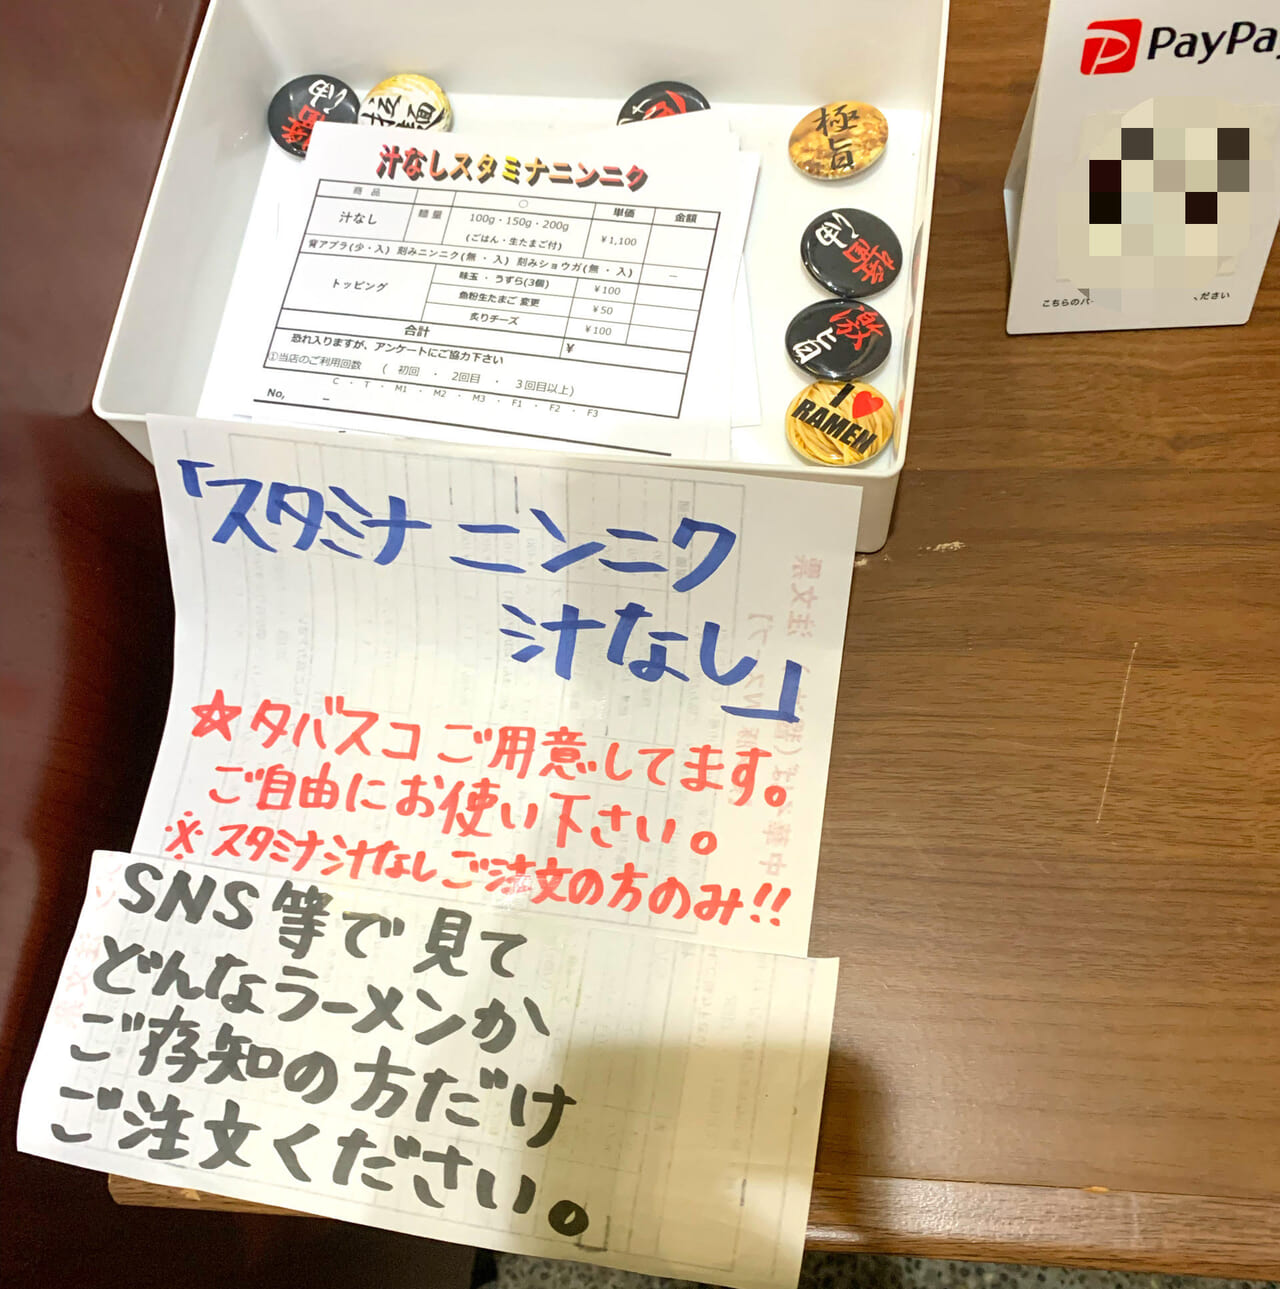 東村の人気ラーメン店「らぁ麺 enten香」の「スタミナニンニク汁なし」が4月28日で終了予定!!